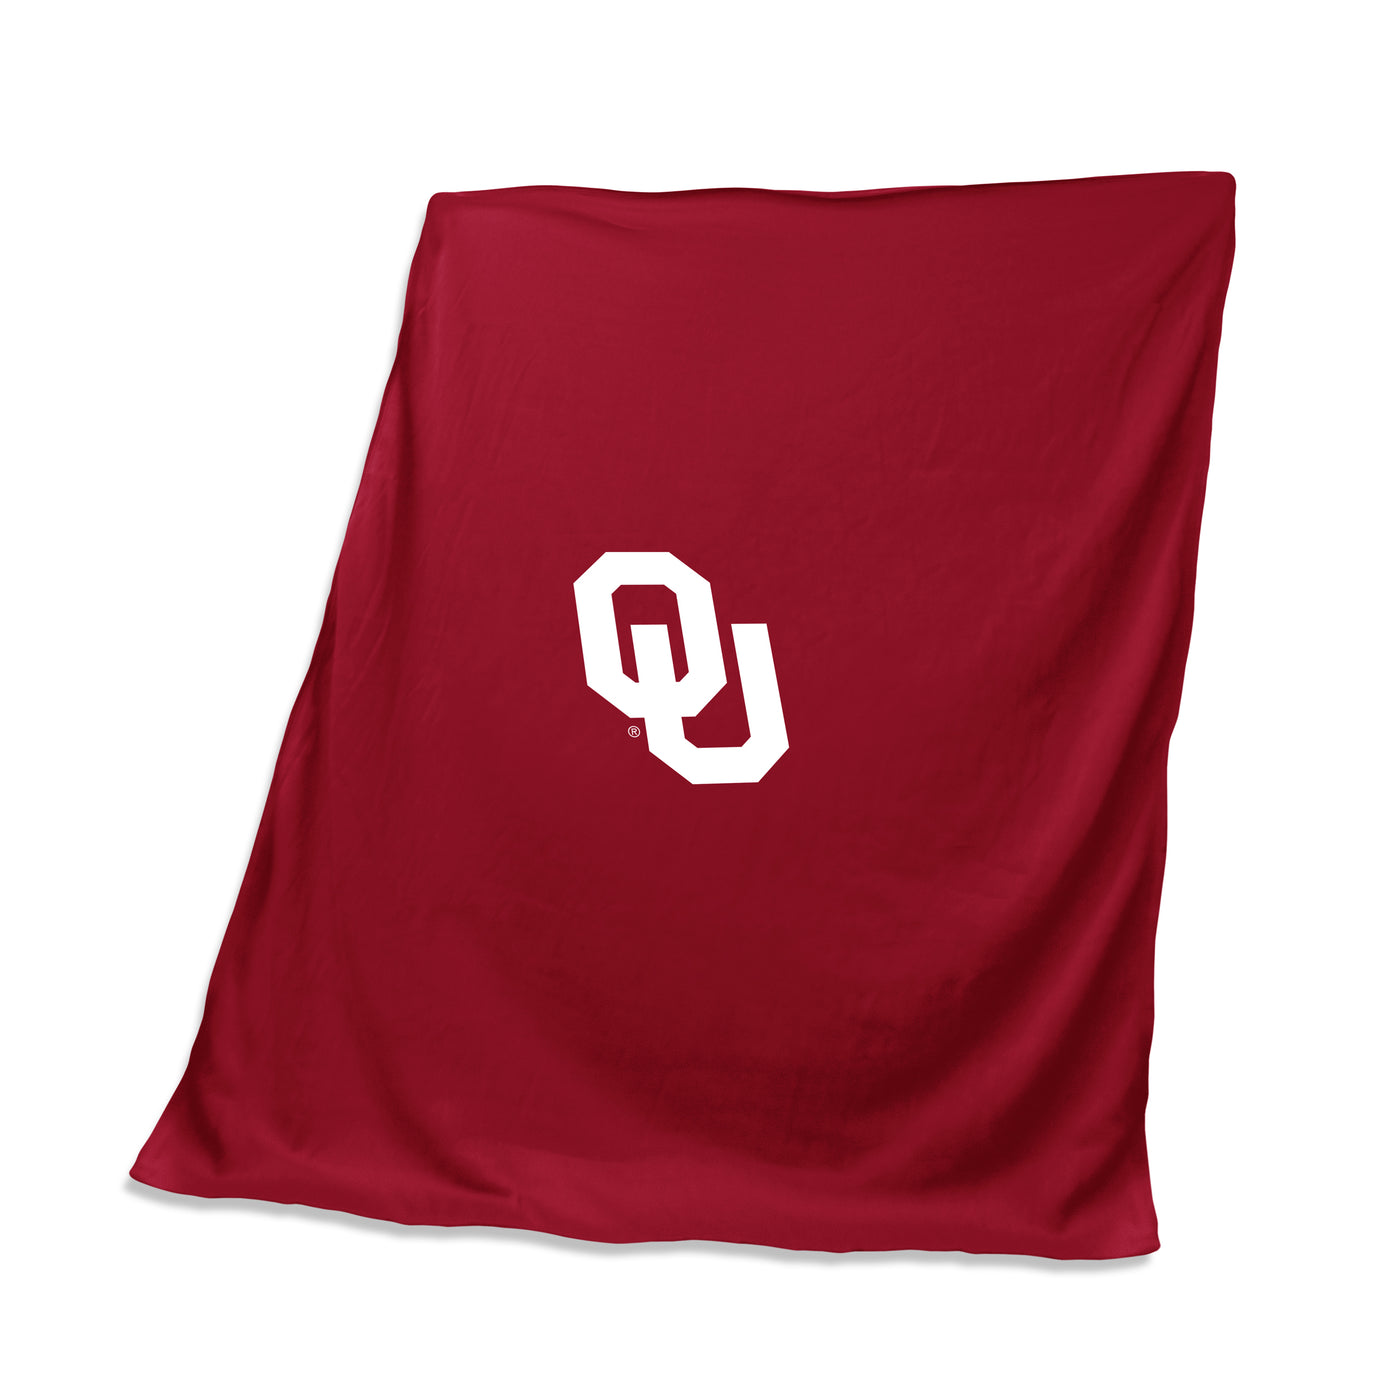 Oklahoma Sweatshirt Blanket